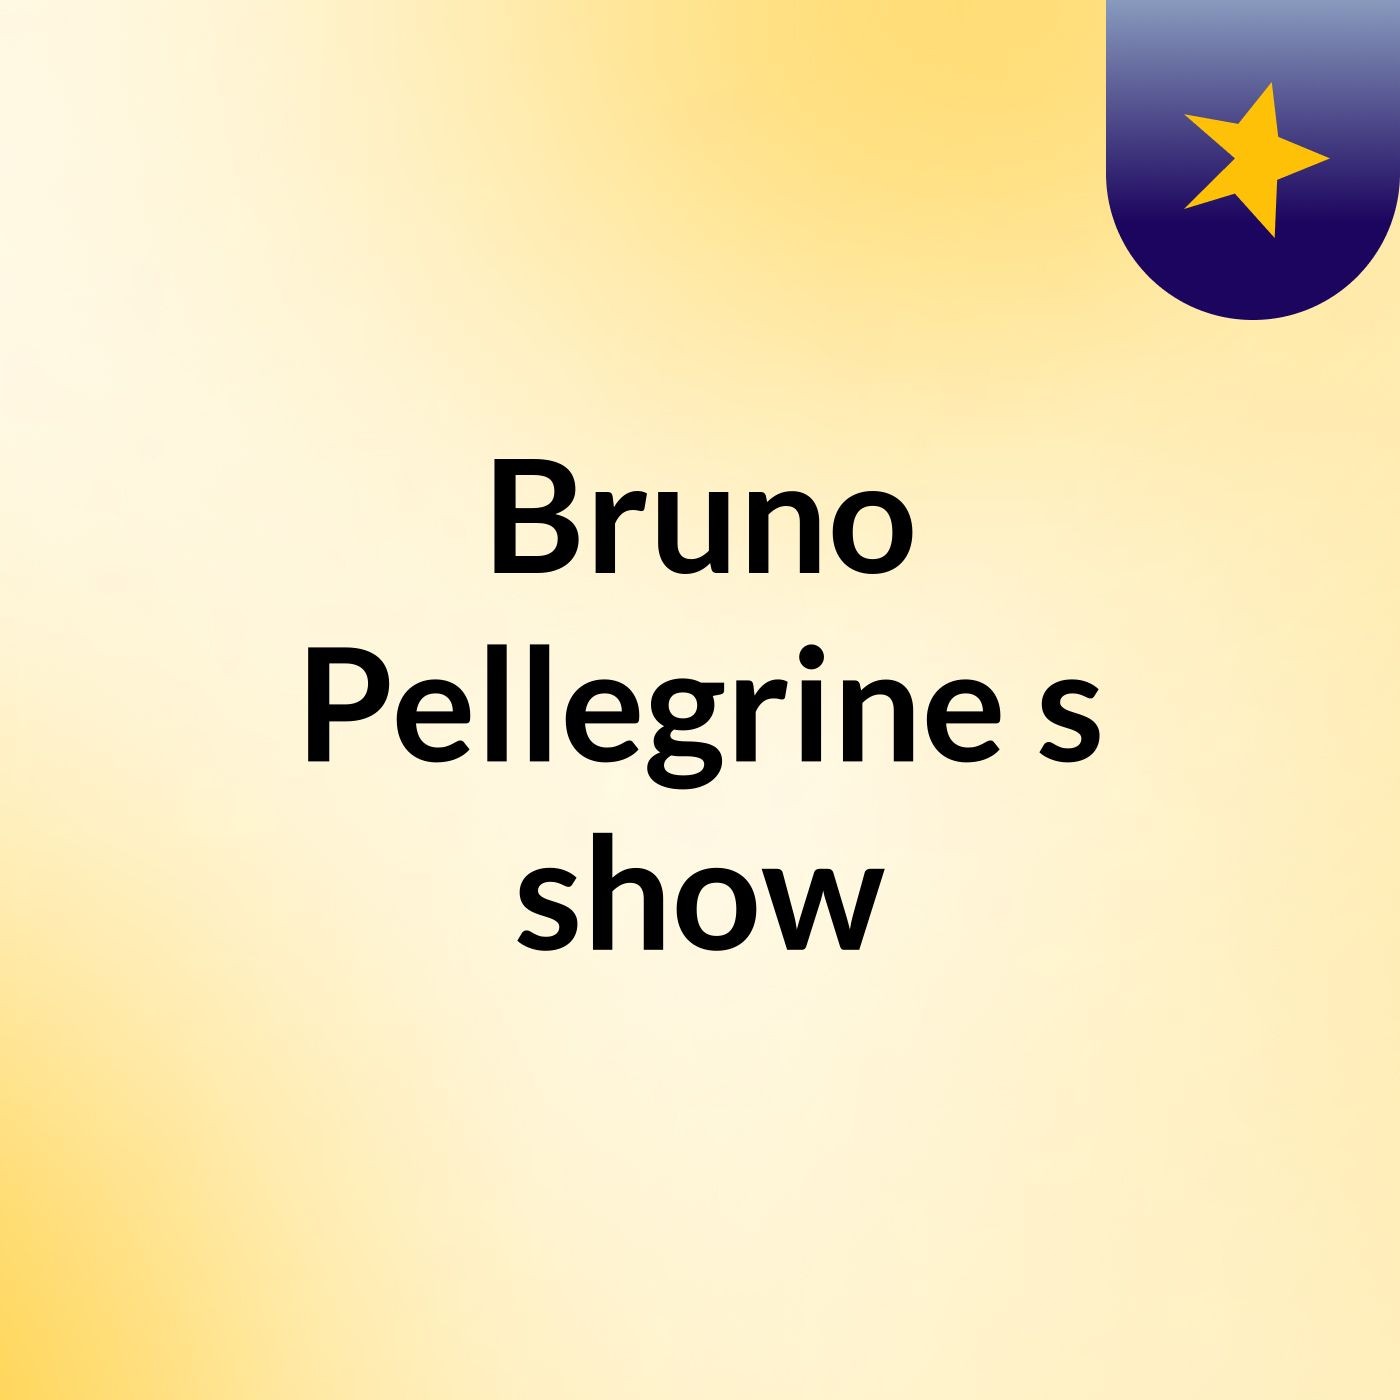 Episódio 3 - Bruno Pellegrine's show